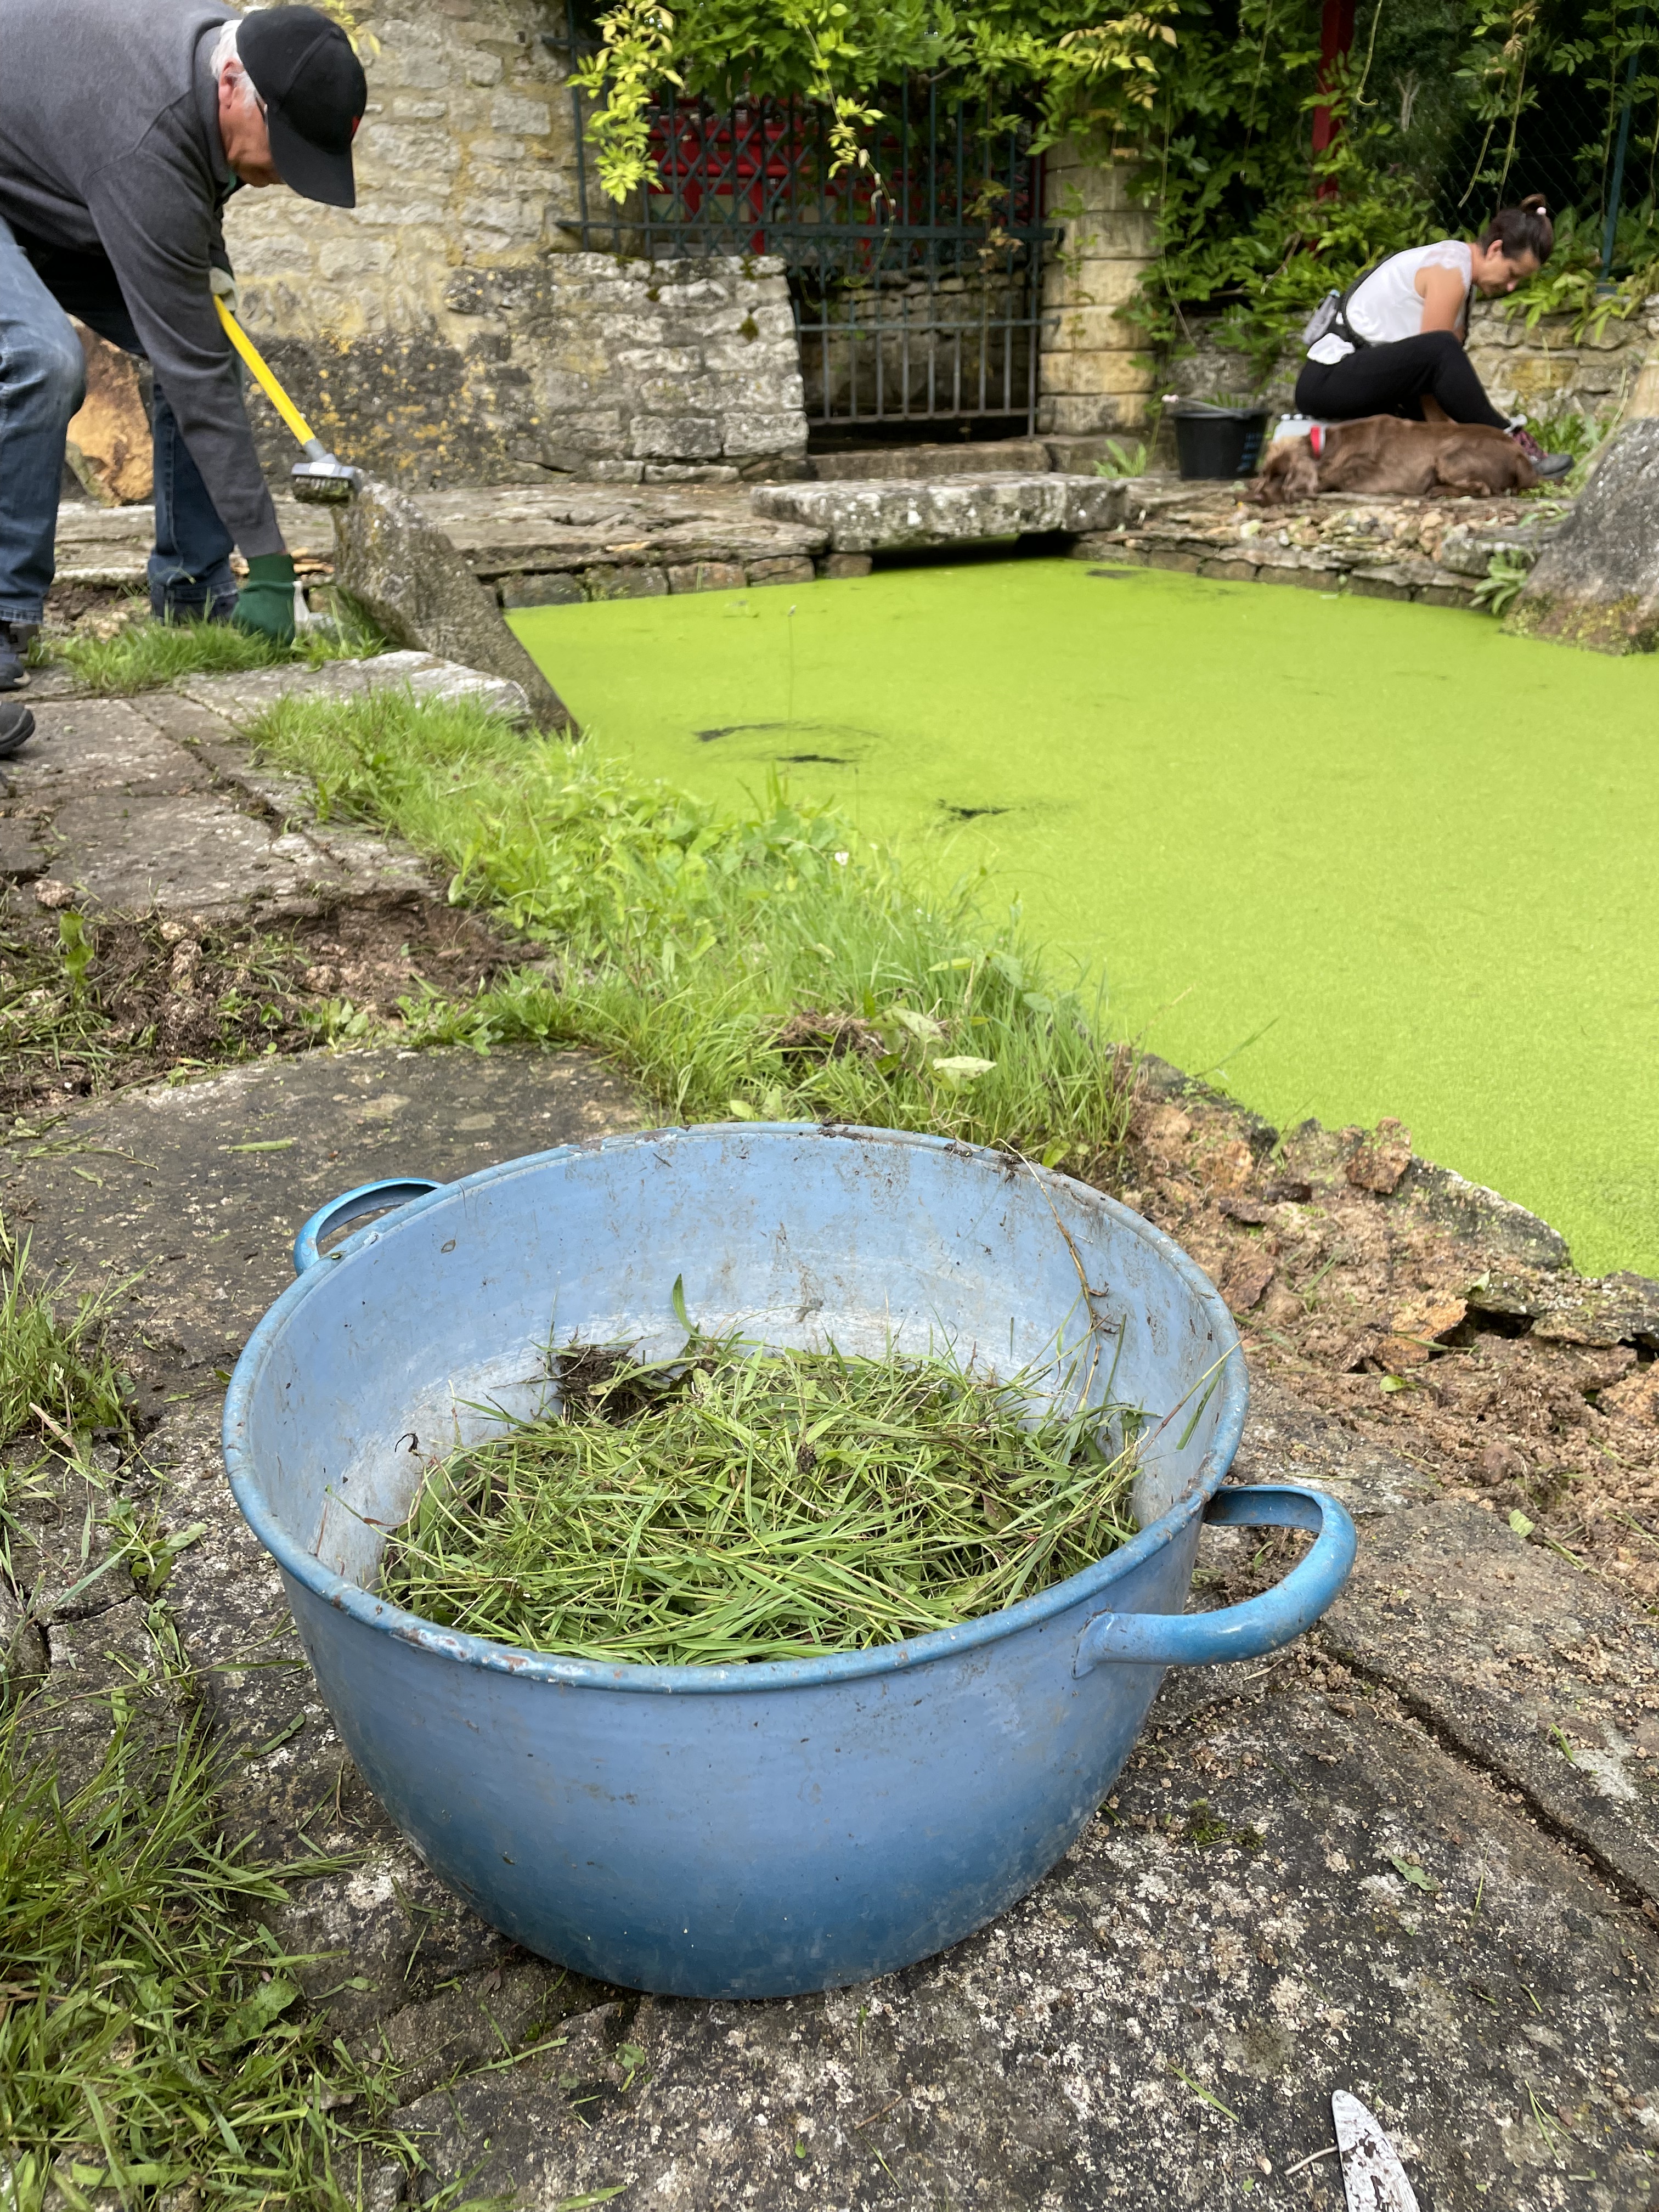 Détail des mauvaises herbes dans bassine ancienne photo Nathalie Tiennot pour agence Denatt